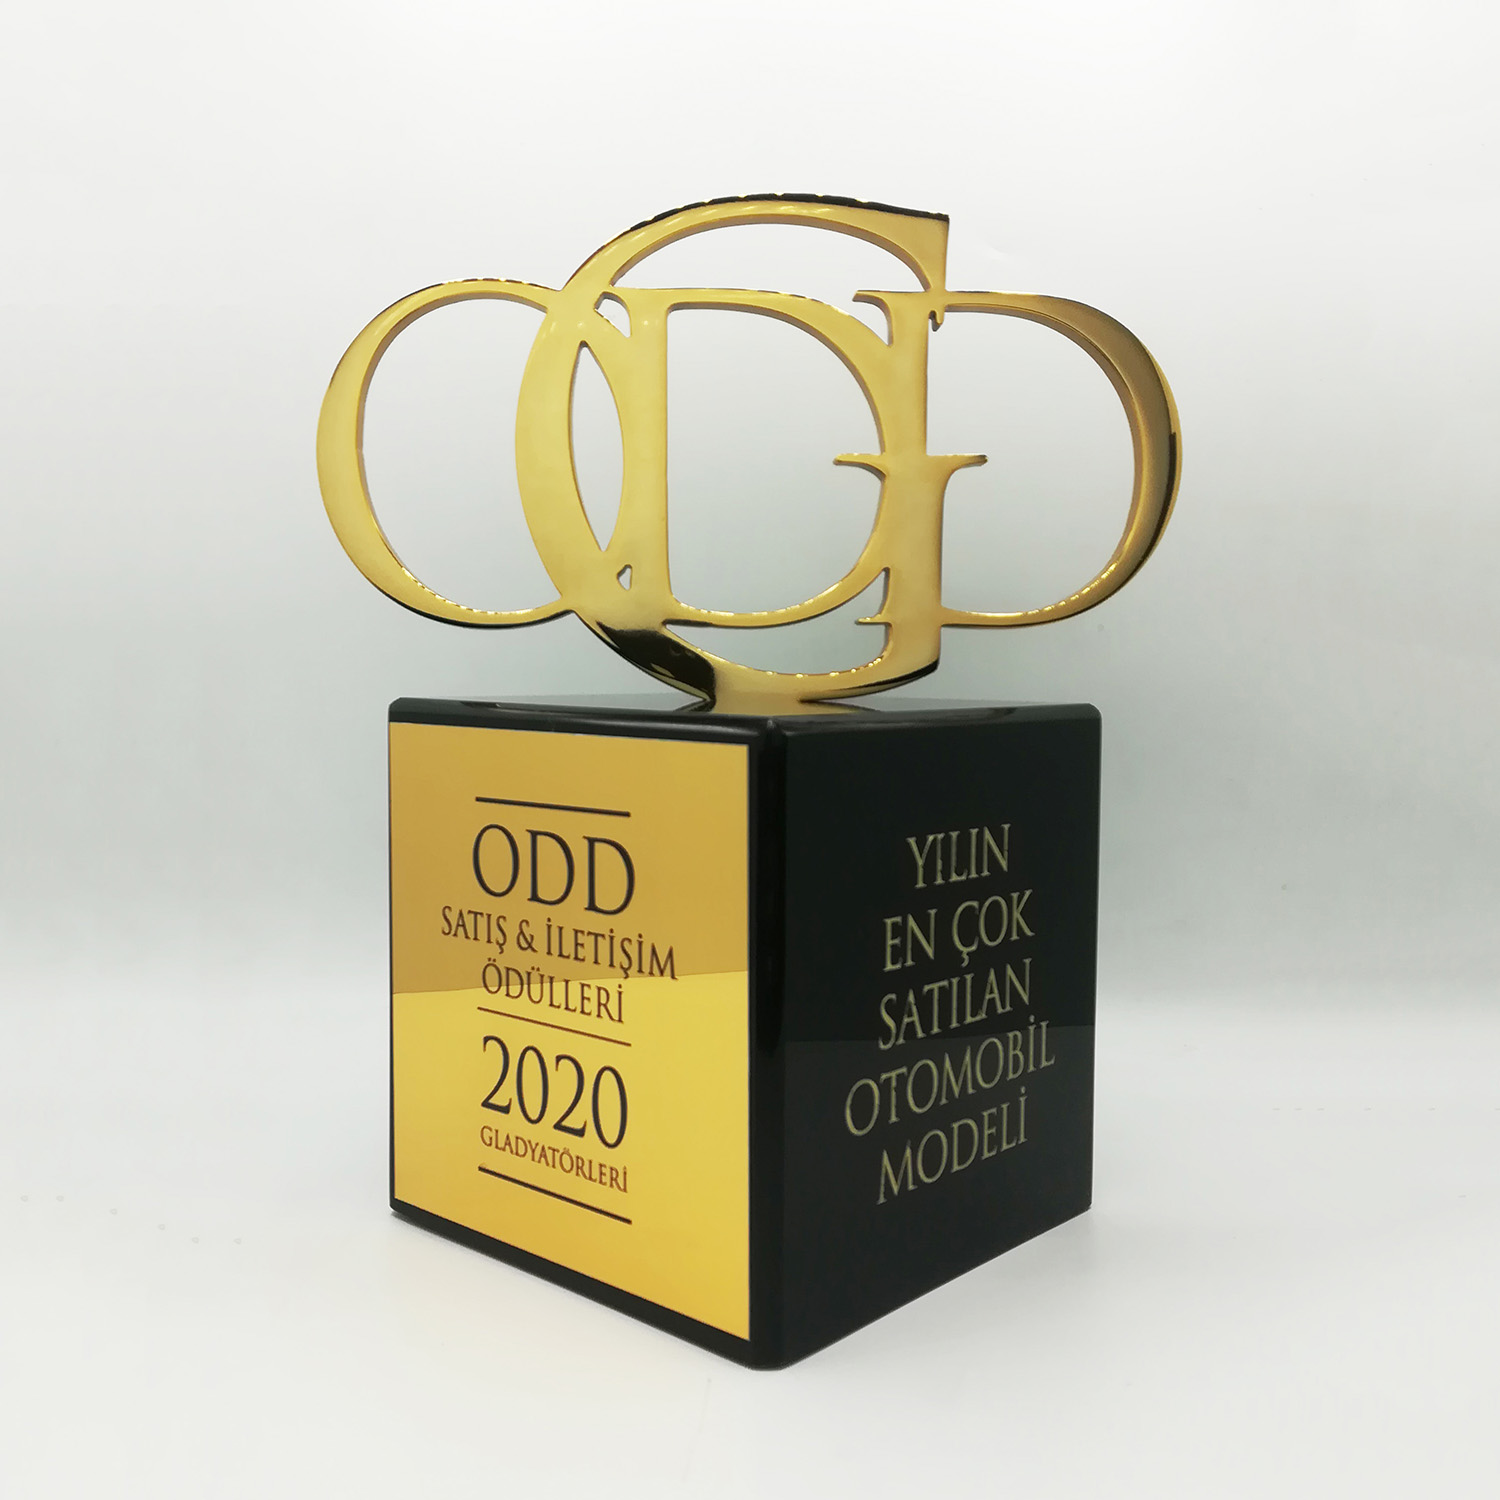 ODD Satış ve iletişim Ödülleri